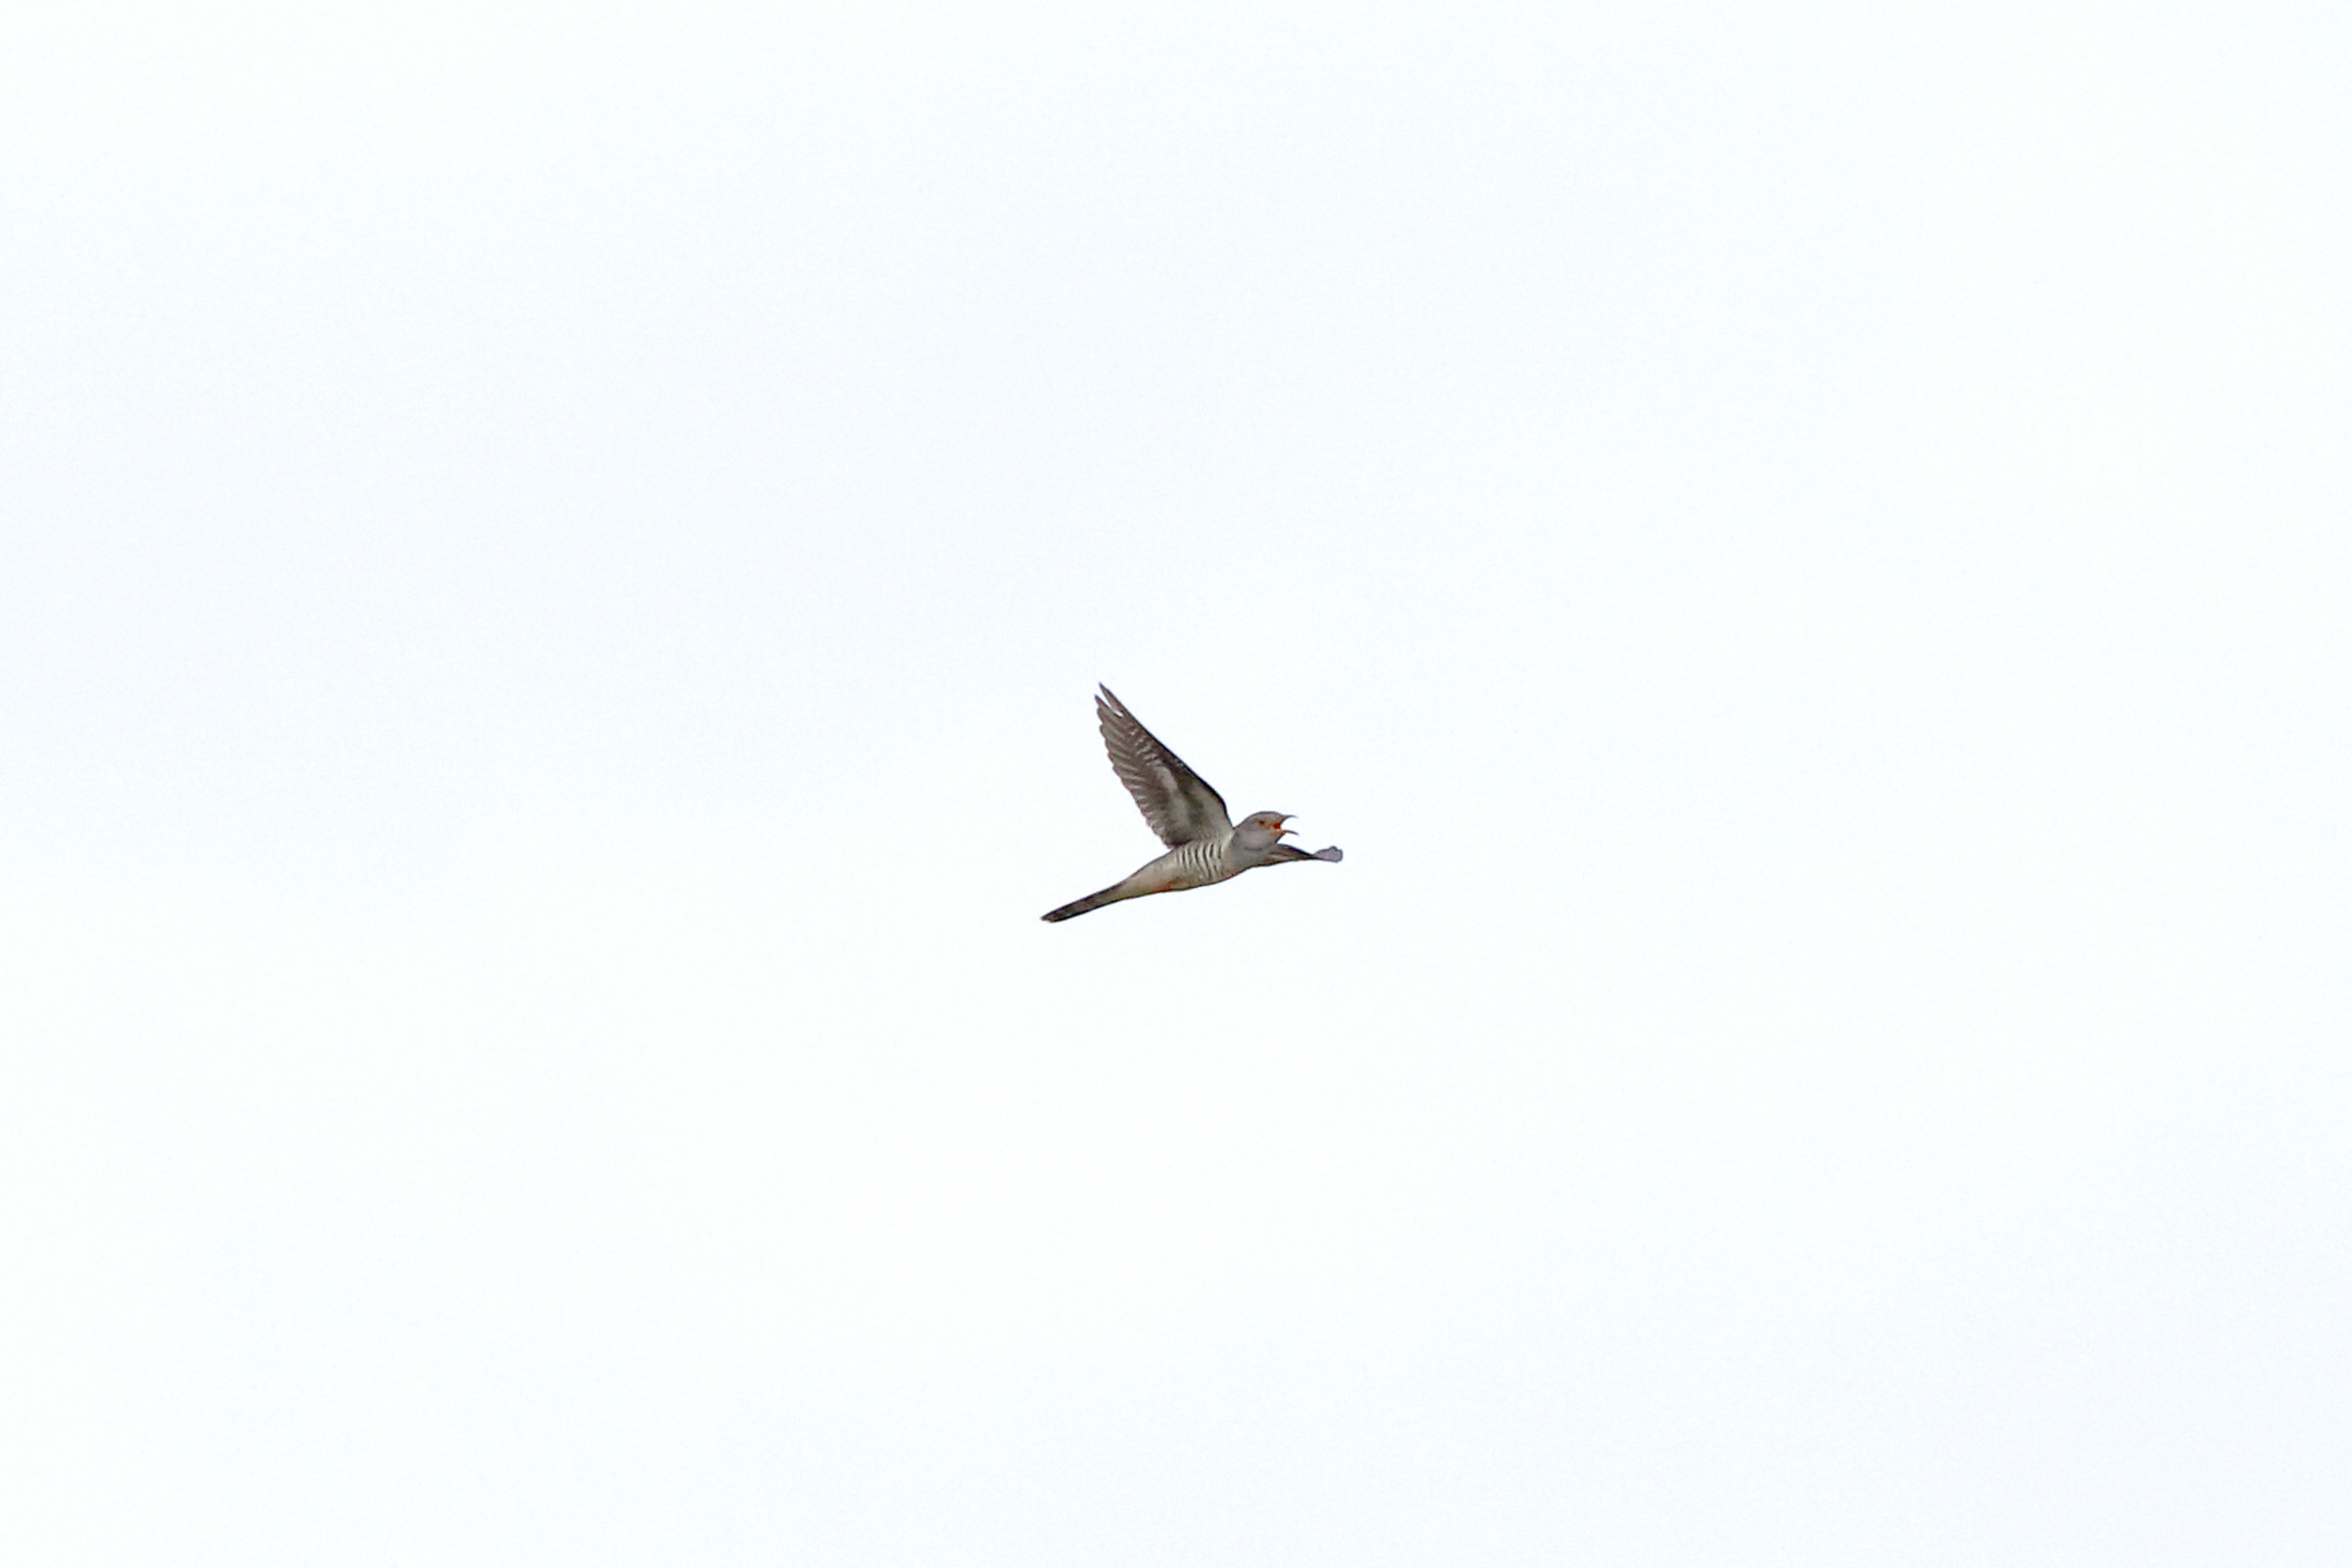 ホトトギス 特徴的な鳴き声 野鳥写真図鑑 バードブランチプロジェクト Canon Global